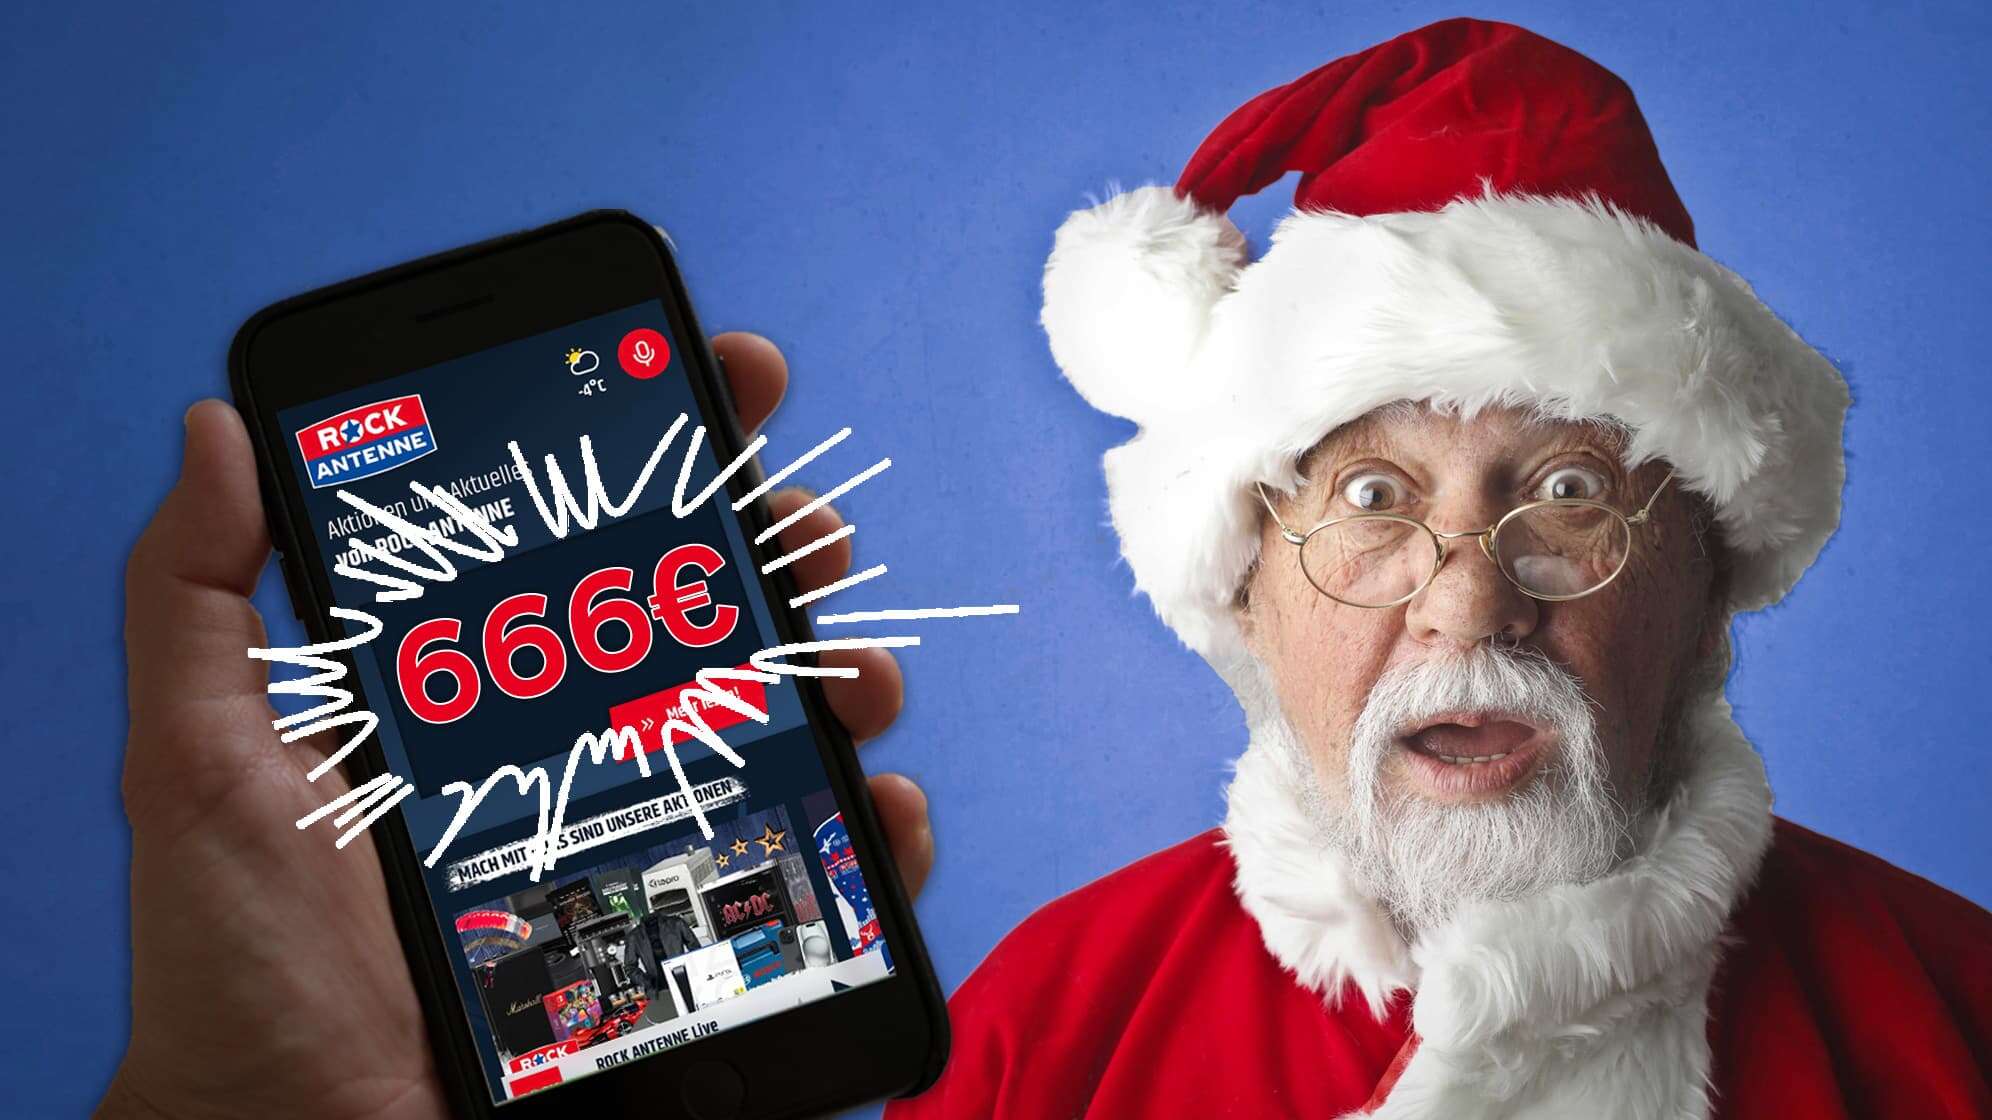 Ein überrascht blickender Weihnachtsmann, eine Hand mit einem Smartphone, darauf zu sehen ist die geöffnete ROCK ANTENNE App und 666 Euro